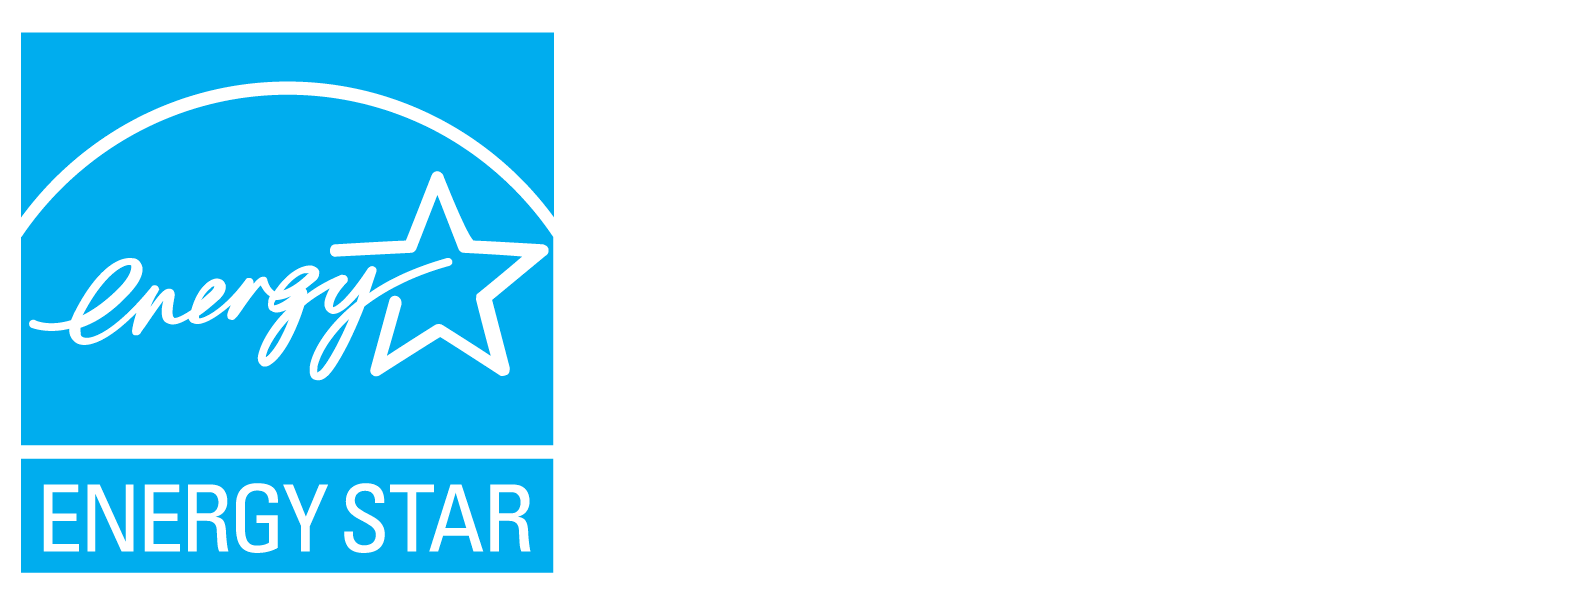 Nous avons des fenêtres qui sont classées Energy Star les plus efficaces 2024